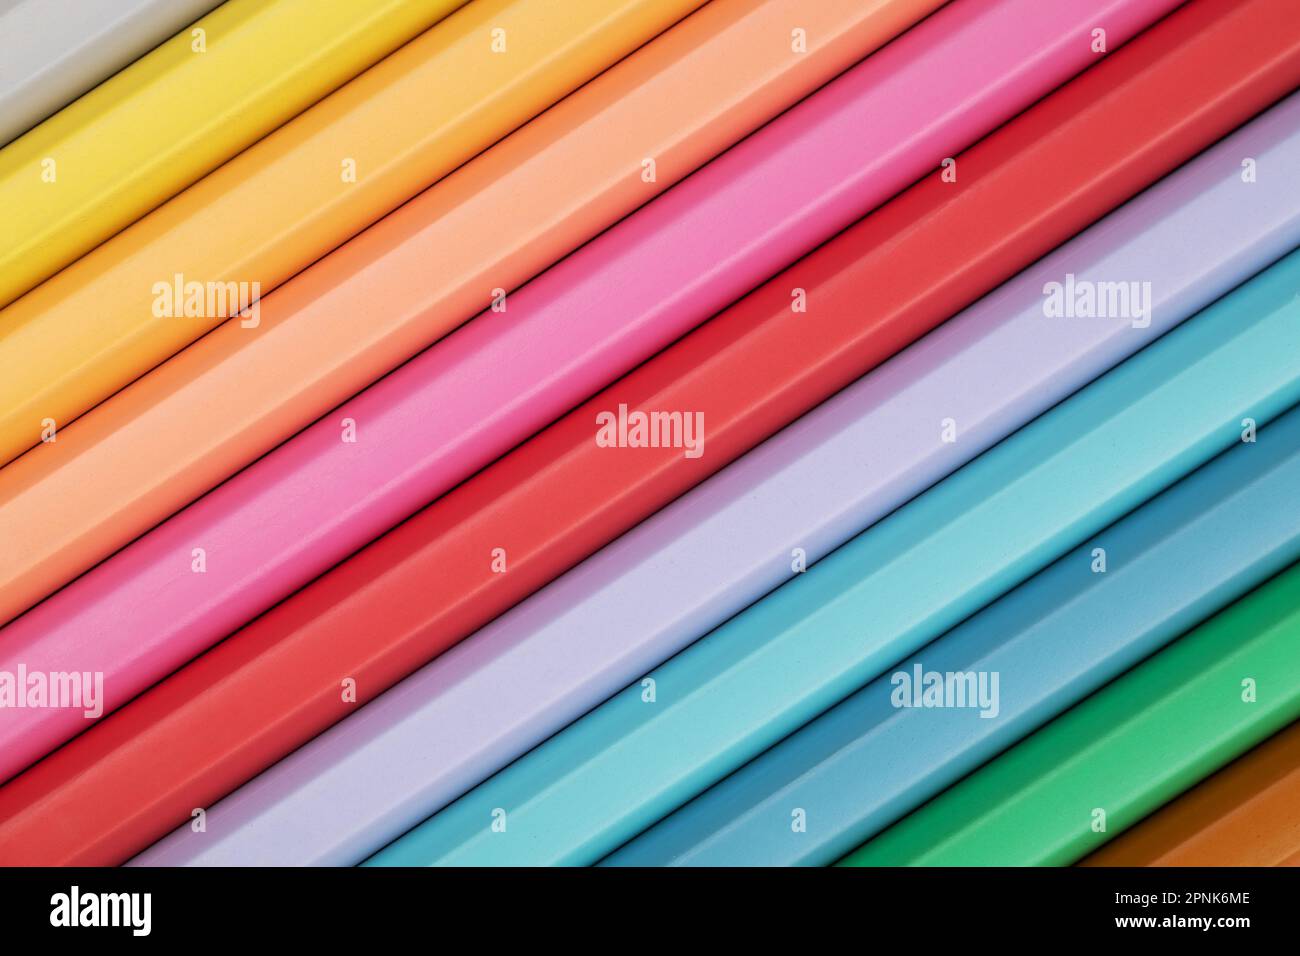 Farbige Bleistifte in Pastelltönen auf pinkfarbenem Hintergrund. Abstrakter Bleistifthintergrund. Mehrfarbige Pastellstifte. Stockfoto